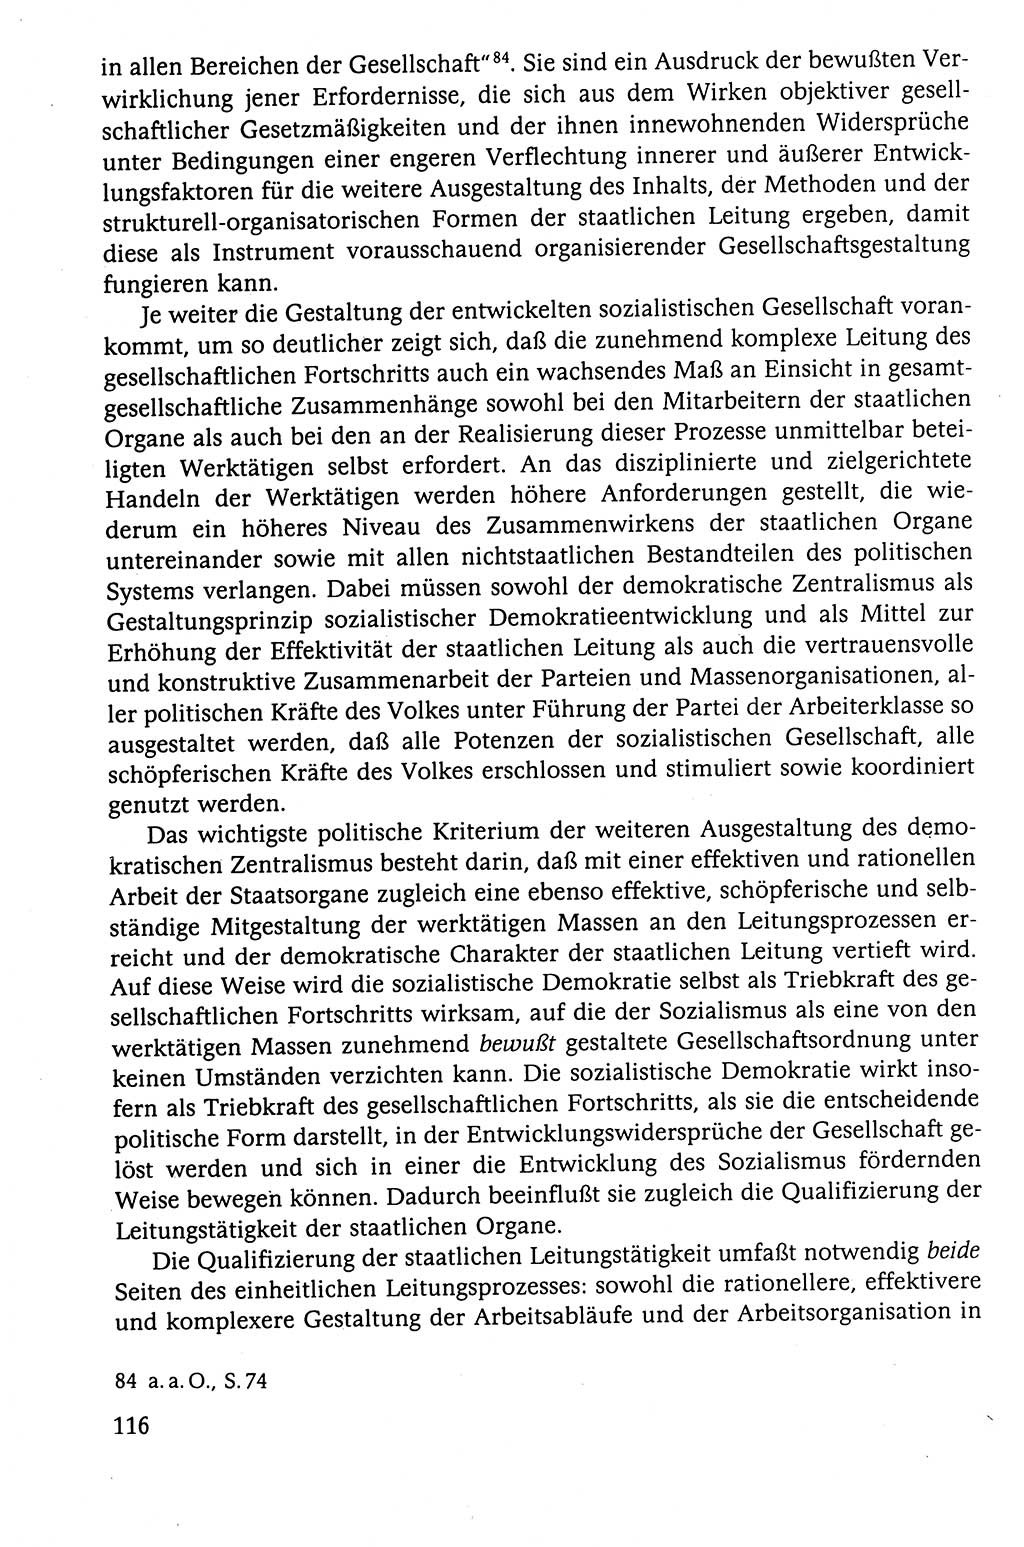 Der Staat im politischen System der DDR (Deutsche Demokratische Republik) 1986, Seite 116 (St. pol. Sys. DDR 1986, S. 116)